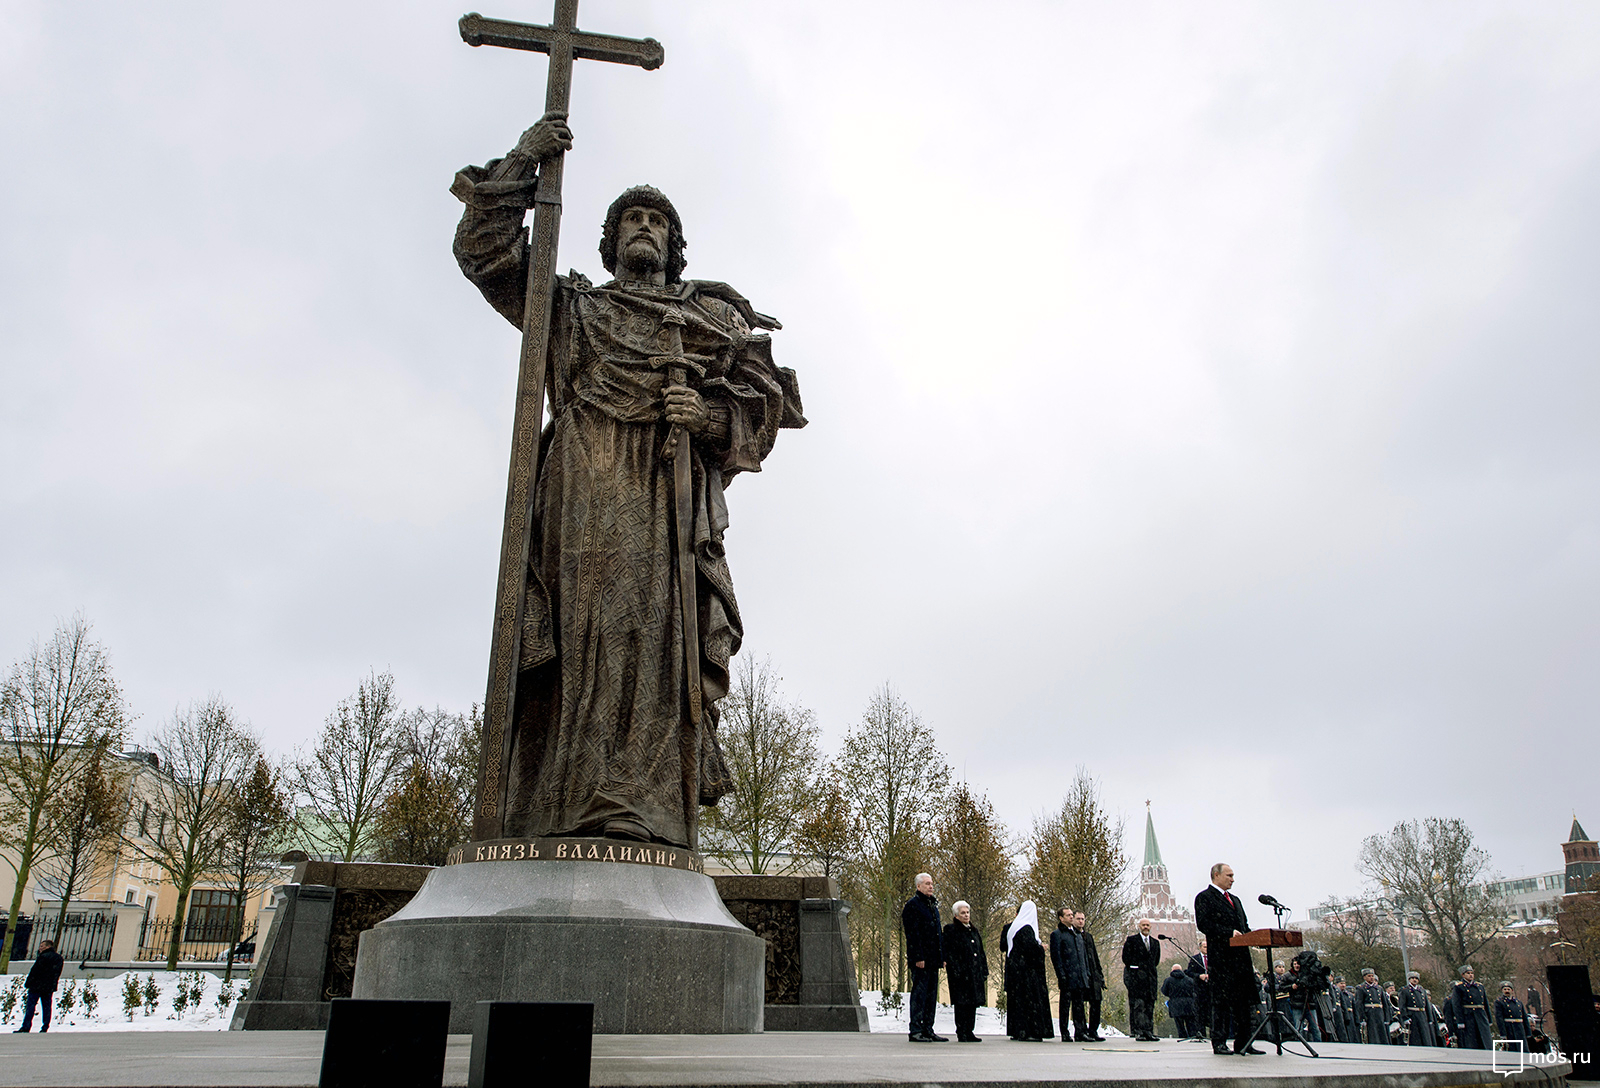 Wywiad Tucker Carlson - Putin wspomina o Włodzimierzu Wielkim jako chrzcicielu Rosji. Na zdjęciu widać odsłonięcie moskiewskiego pomnika Włodzimierza Wielkiego